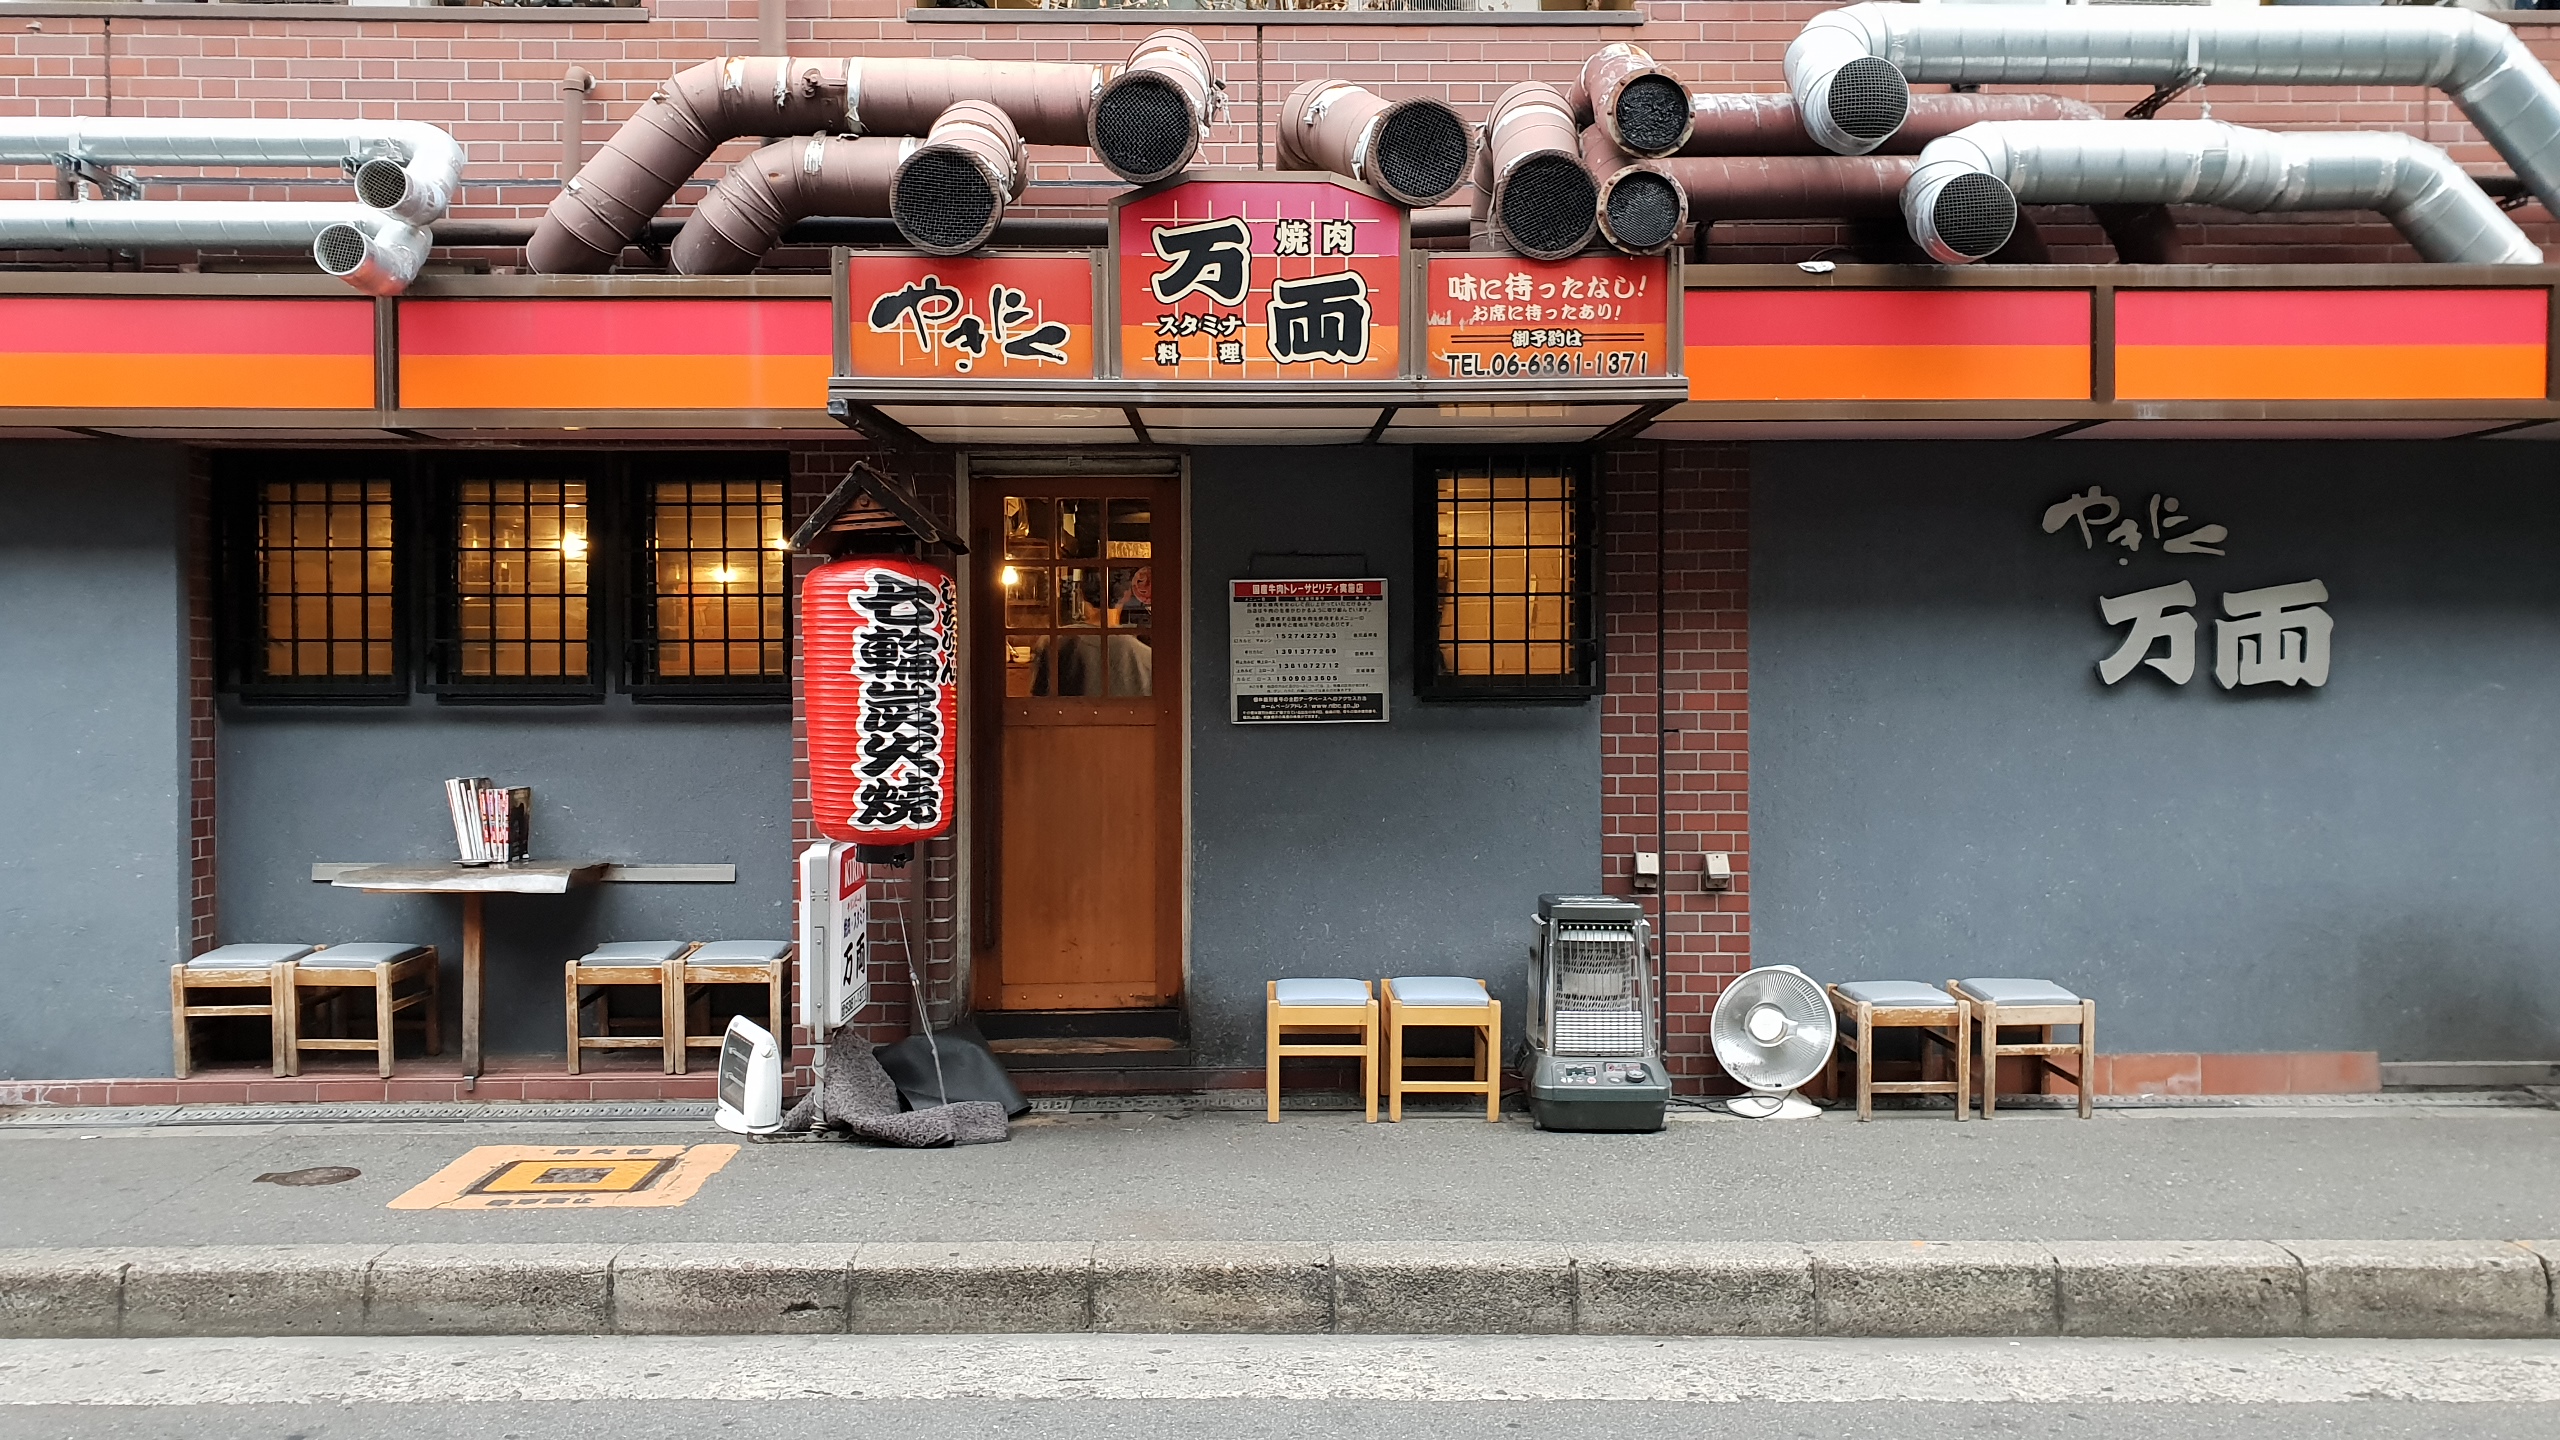 오사카 만료
만료 미나미모리마치